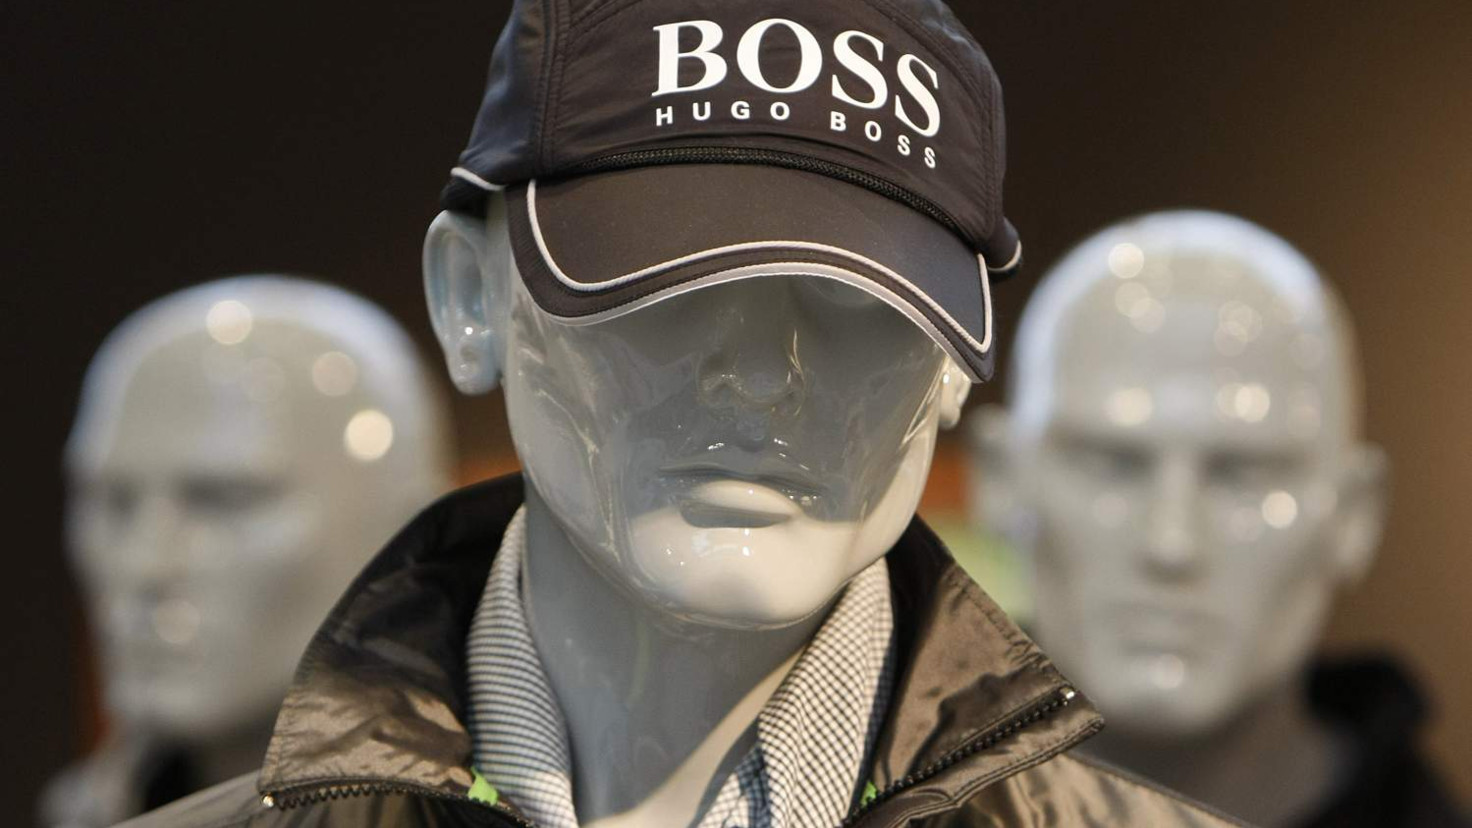 Hugo Boss shares plummet